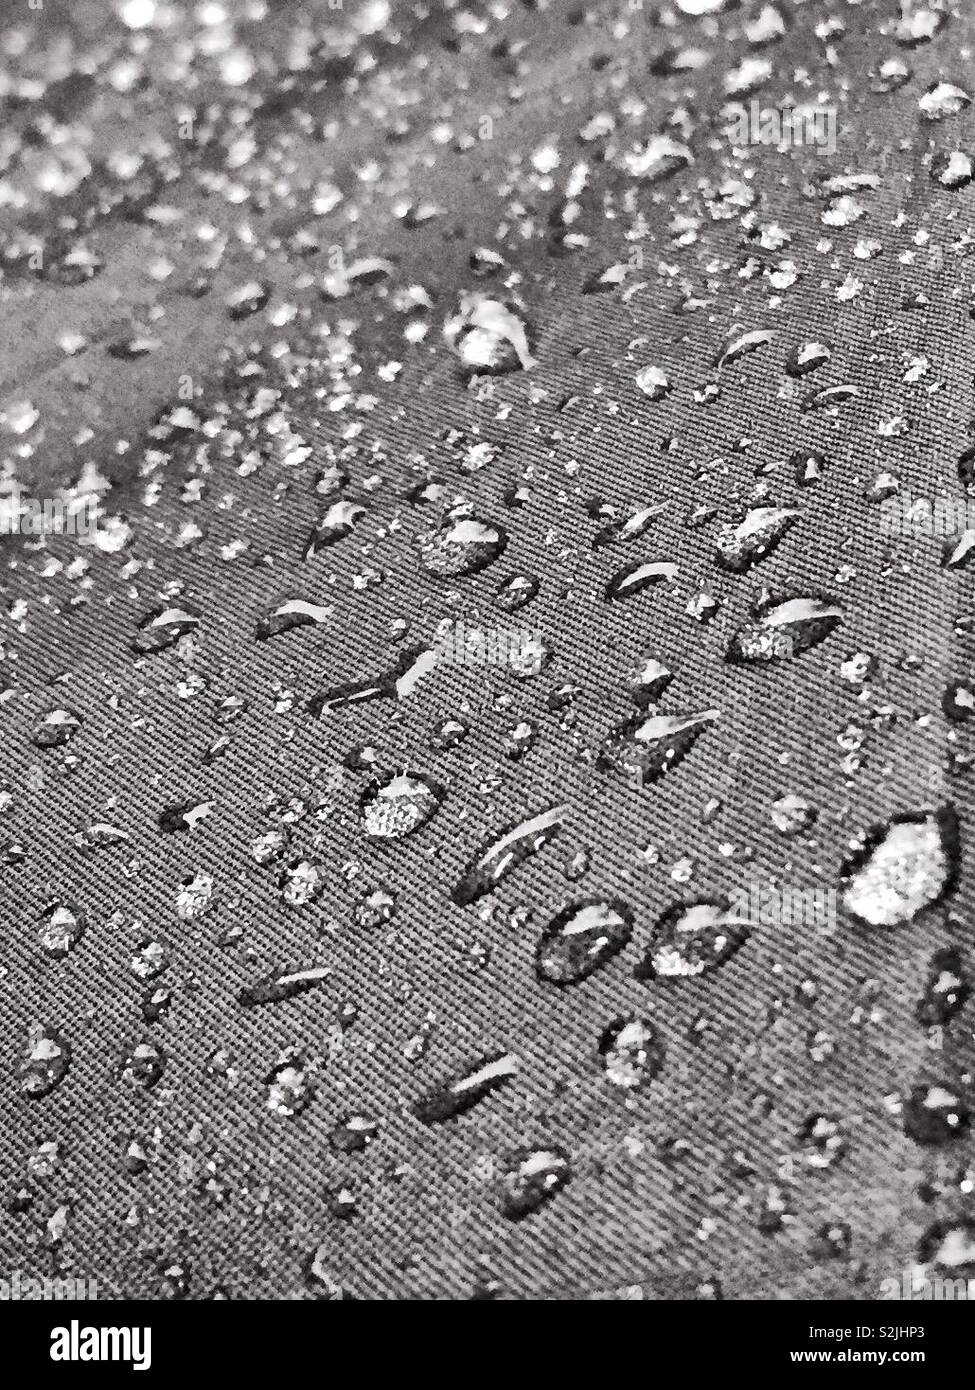 Regentropfen und Regen auf der Leinwand Material von einem Regenschirm. Regentag und Wassertropfen bilden. Unwetterwarnung und schlechte Prognose. Notwendigkeit, trocken zu bleiben. Großbritannien London Manchester Glasgow Birmingham Stockfoto